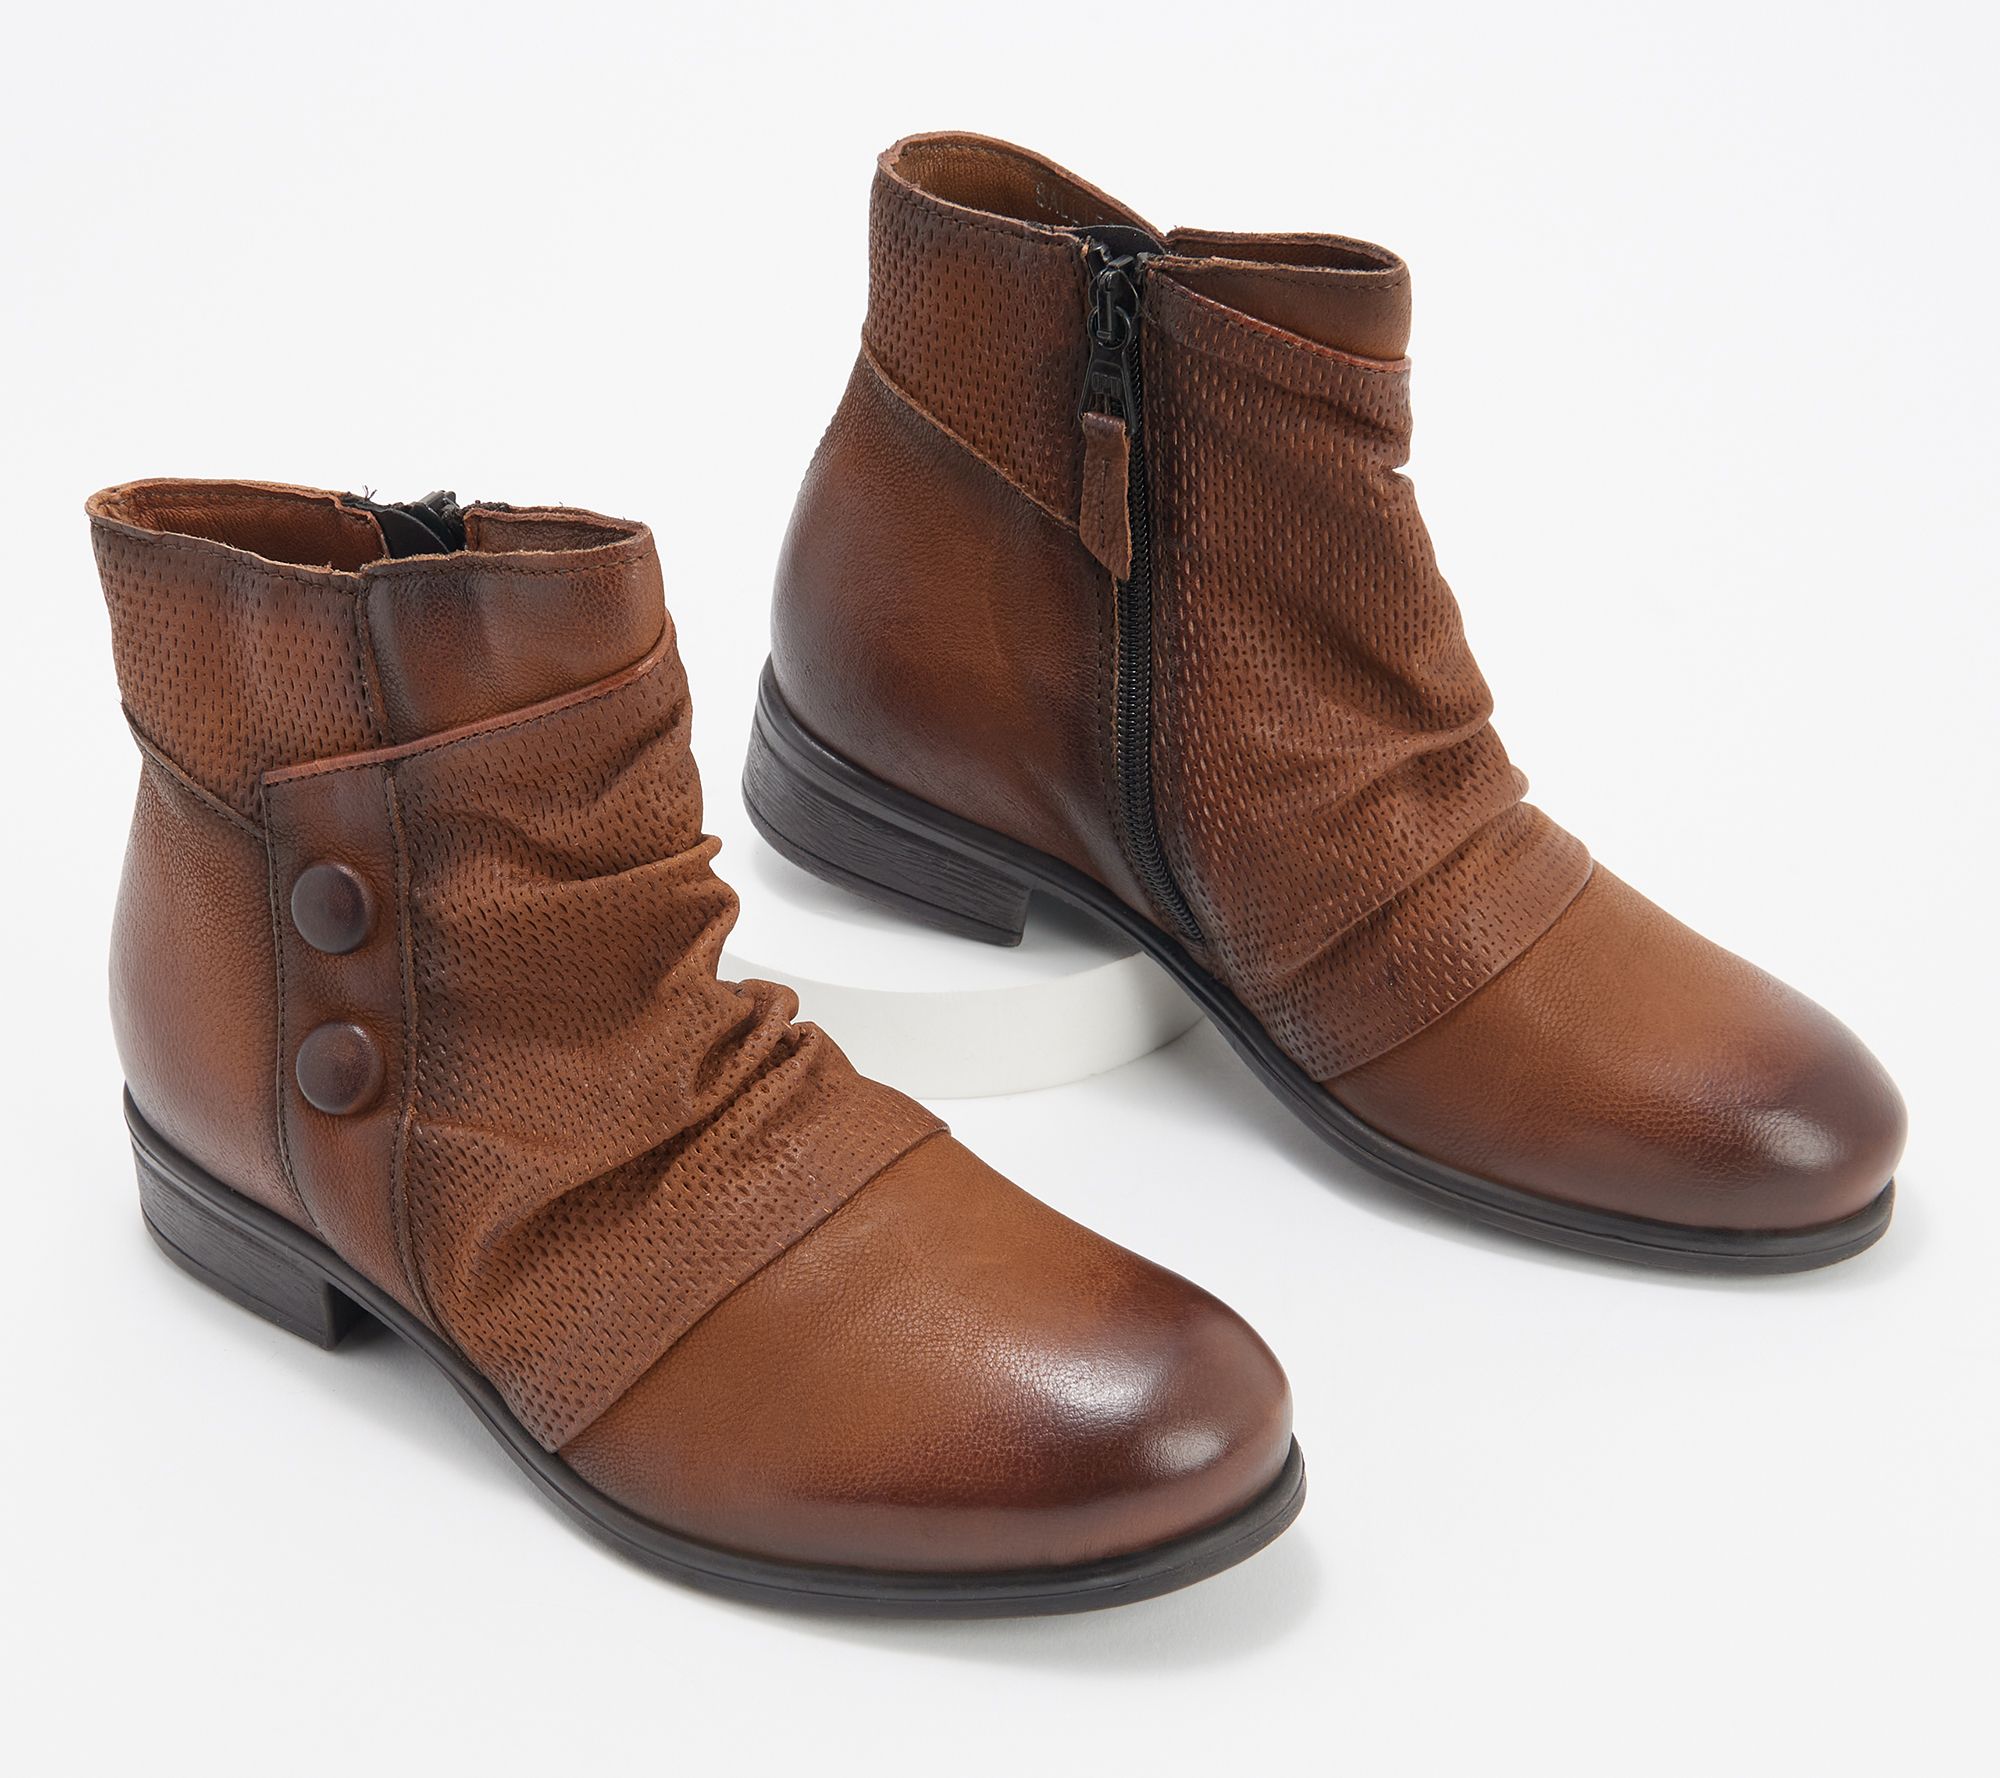 Miz Mooz Leather Wide Width Ankle Boots- Sallie, Size EU39W(8.5-9W), Hazelnut